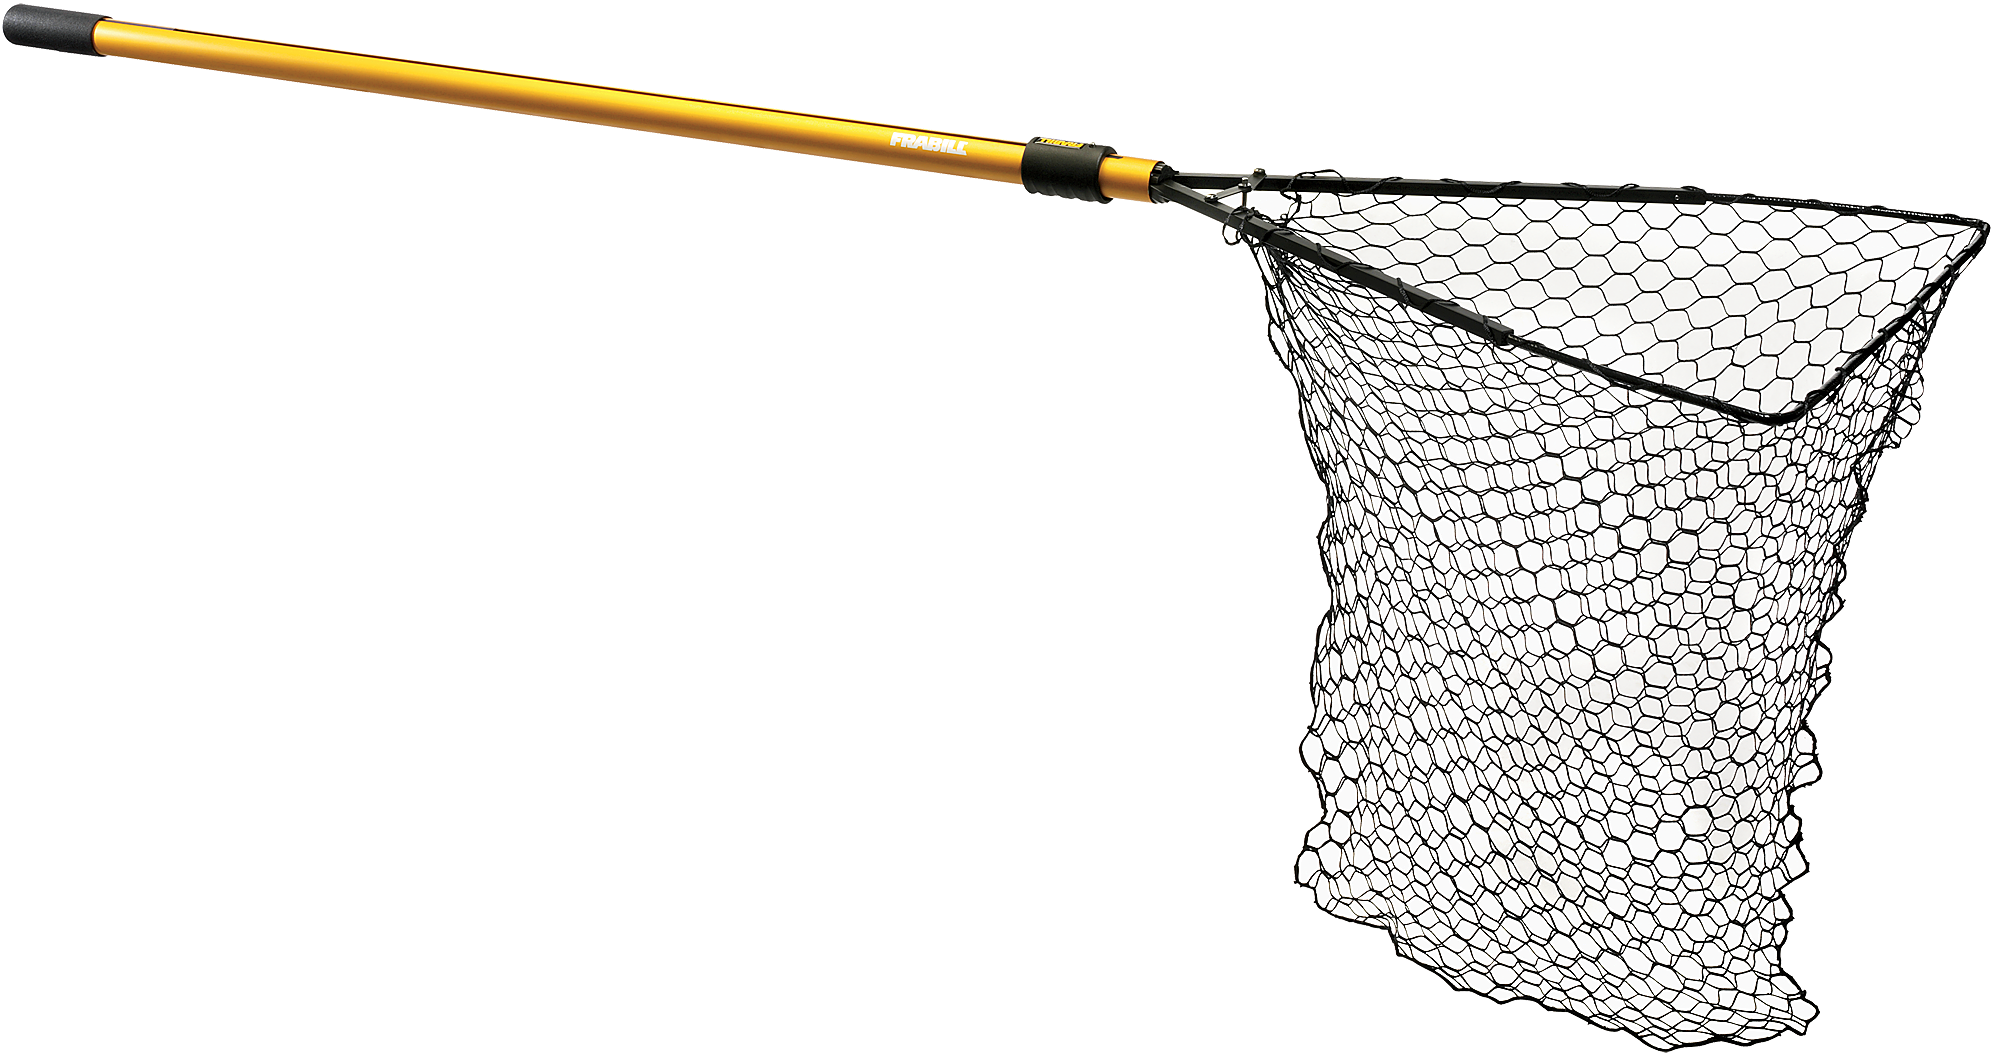 Frabill Hiber-Net Stowable Nets